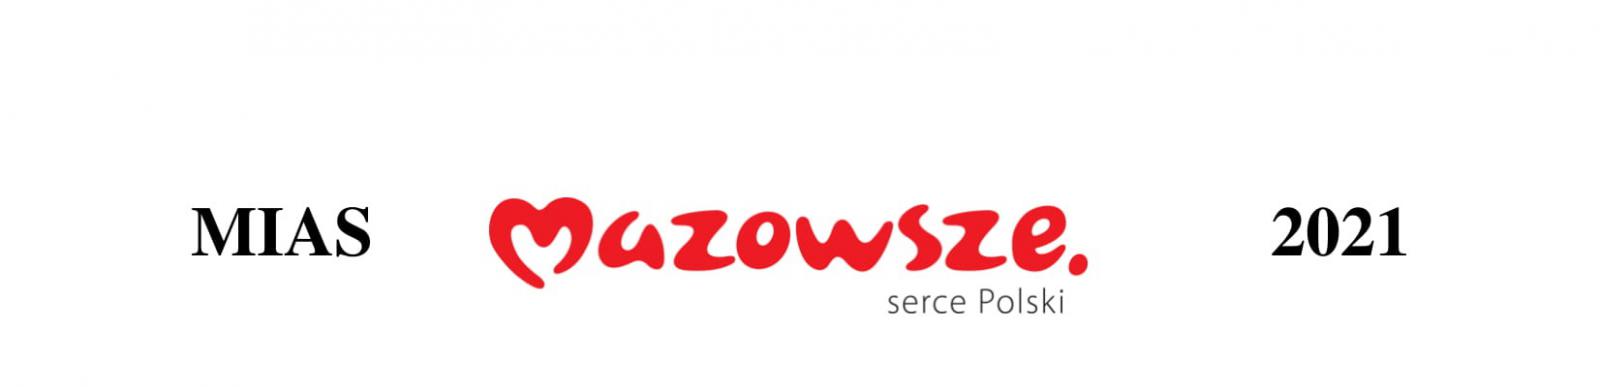 Z lewej strony czarny napis MIAS, na środku czerwony napis Mazowsze serce Polski, z prawej strony 2021